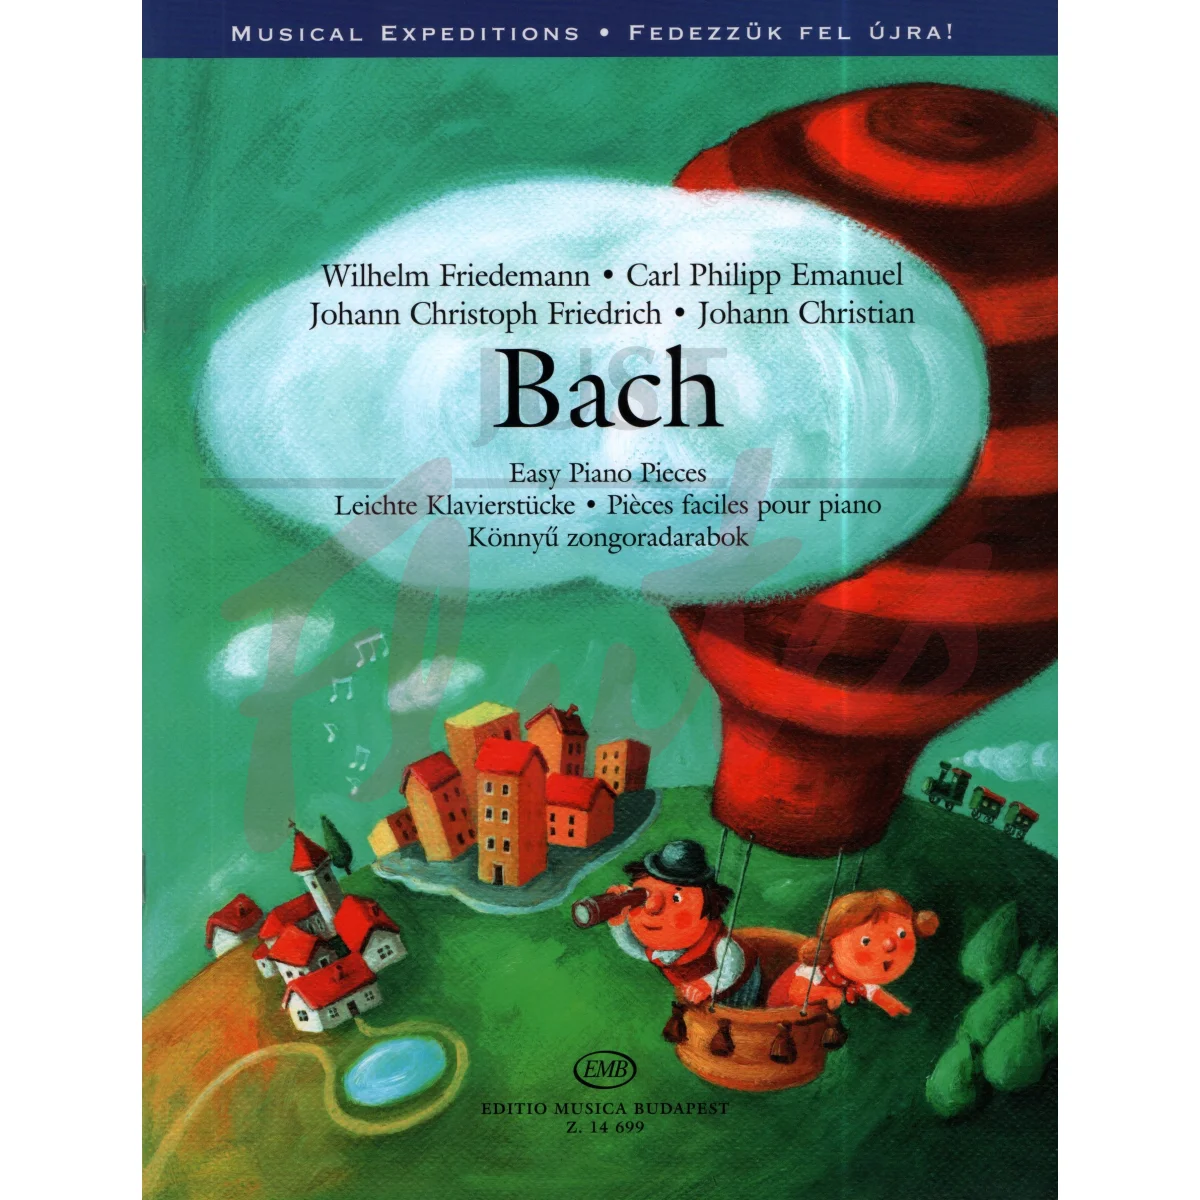 Bach Easy Piano Pieces